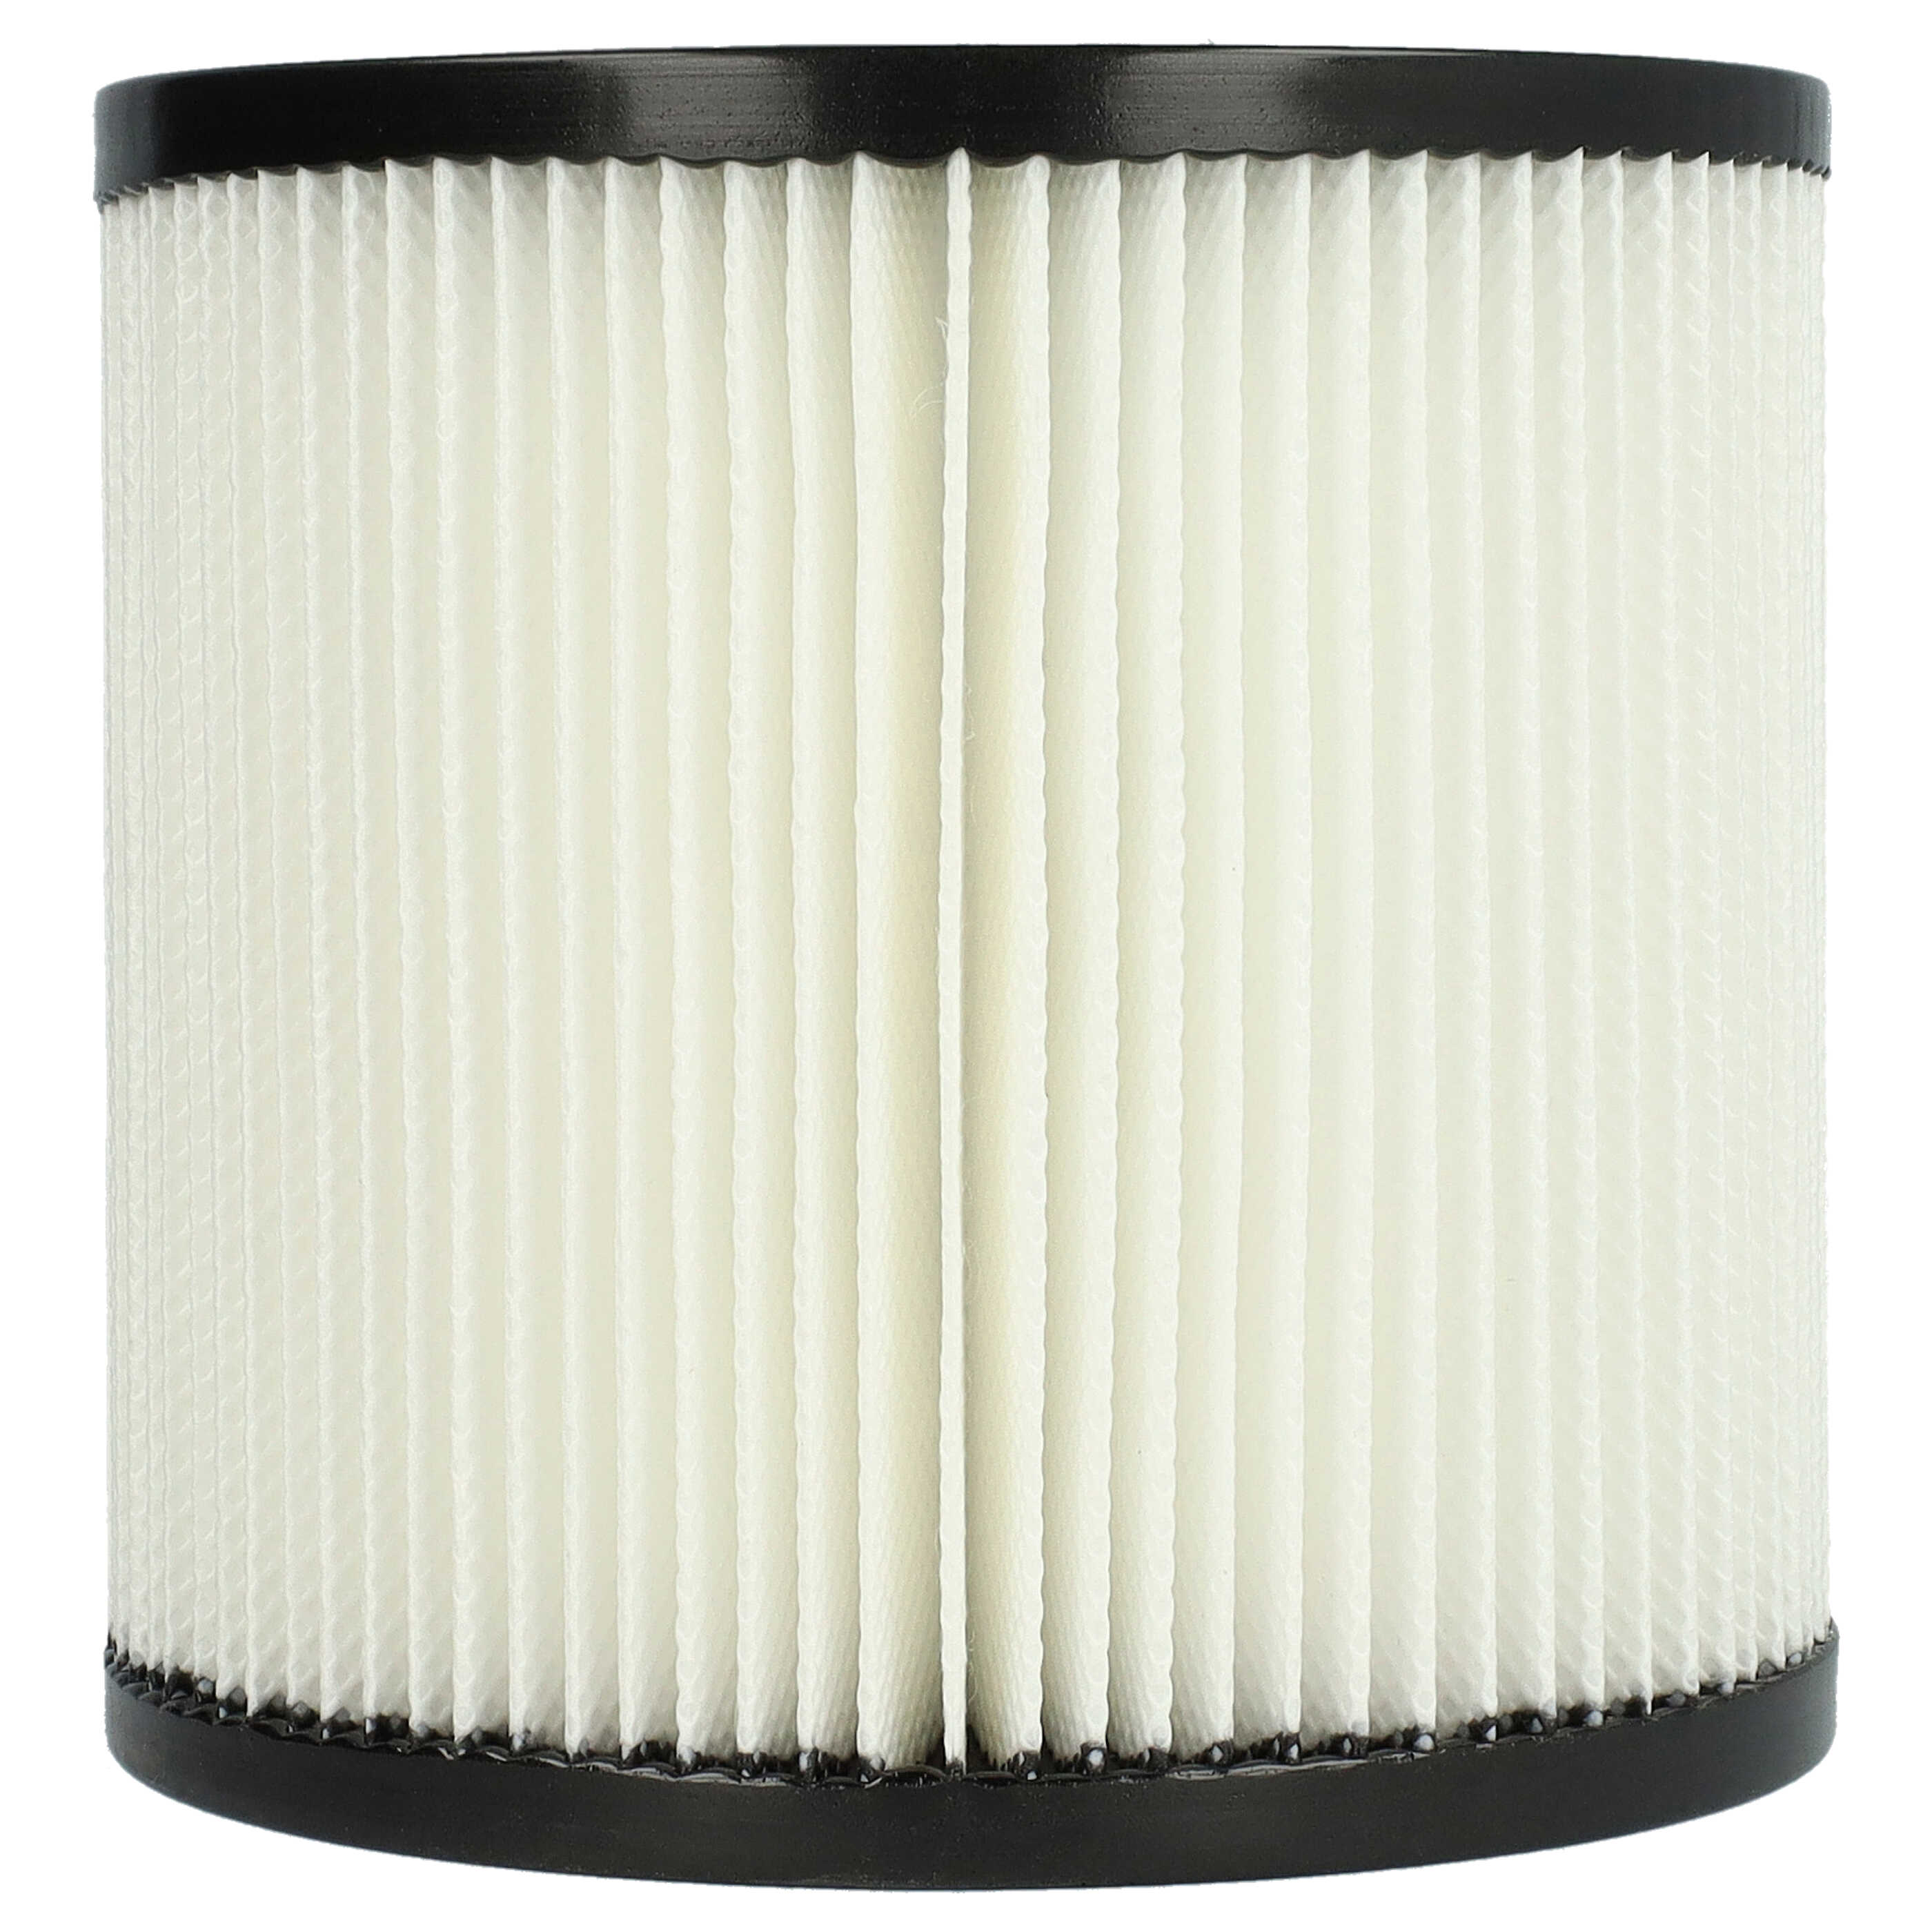 Filtro sostituisce Kärcher 2.889-219.0 per aspirapolvere - filtro cartucce, nero / bianco